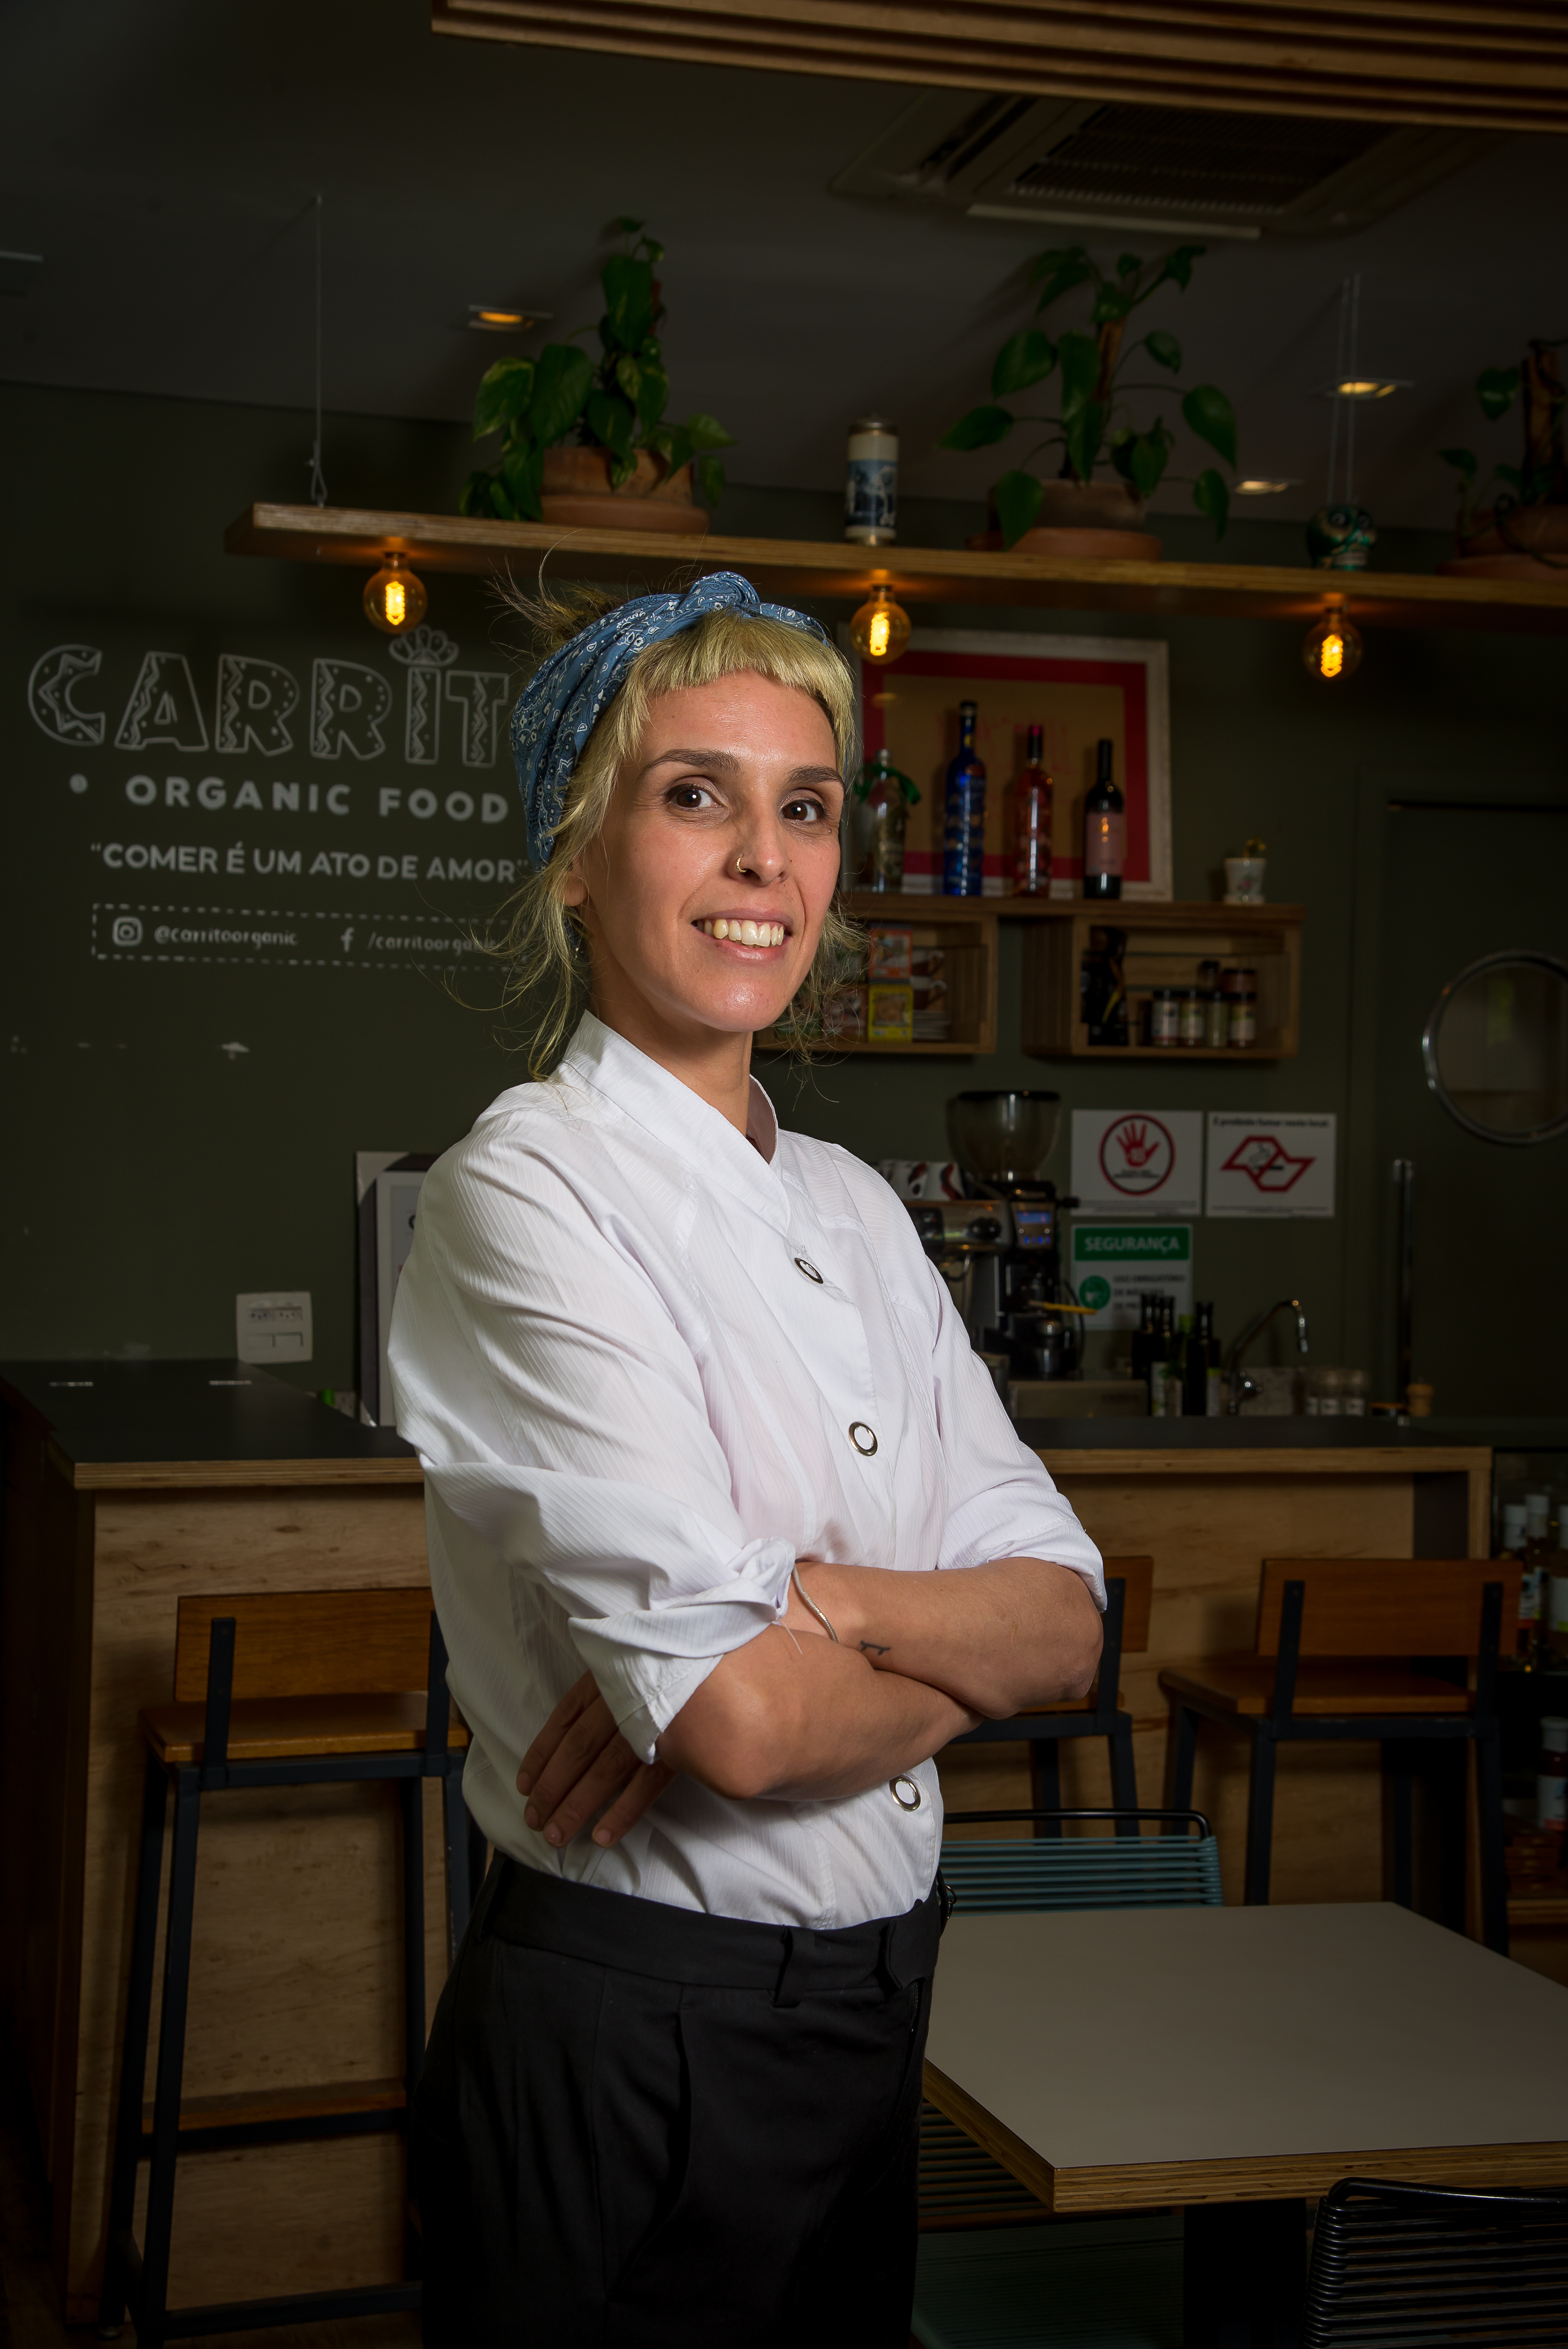 Imagem mostra Camila, com lenço no cabelo e braços cruzados, diante do saguão do restaurante Carrito